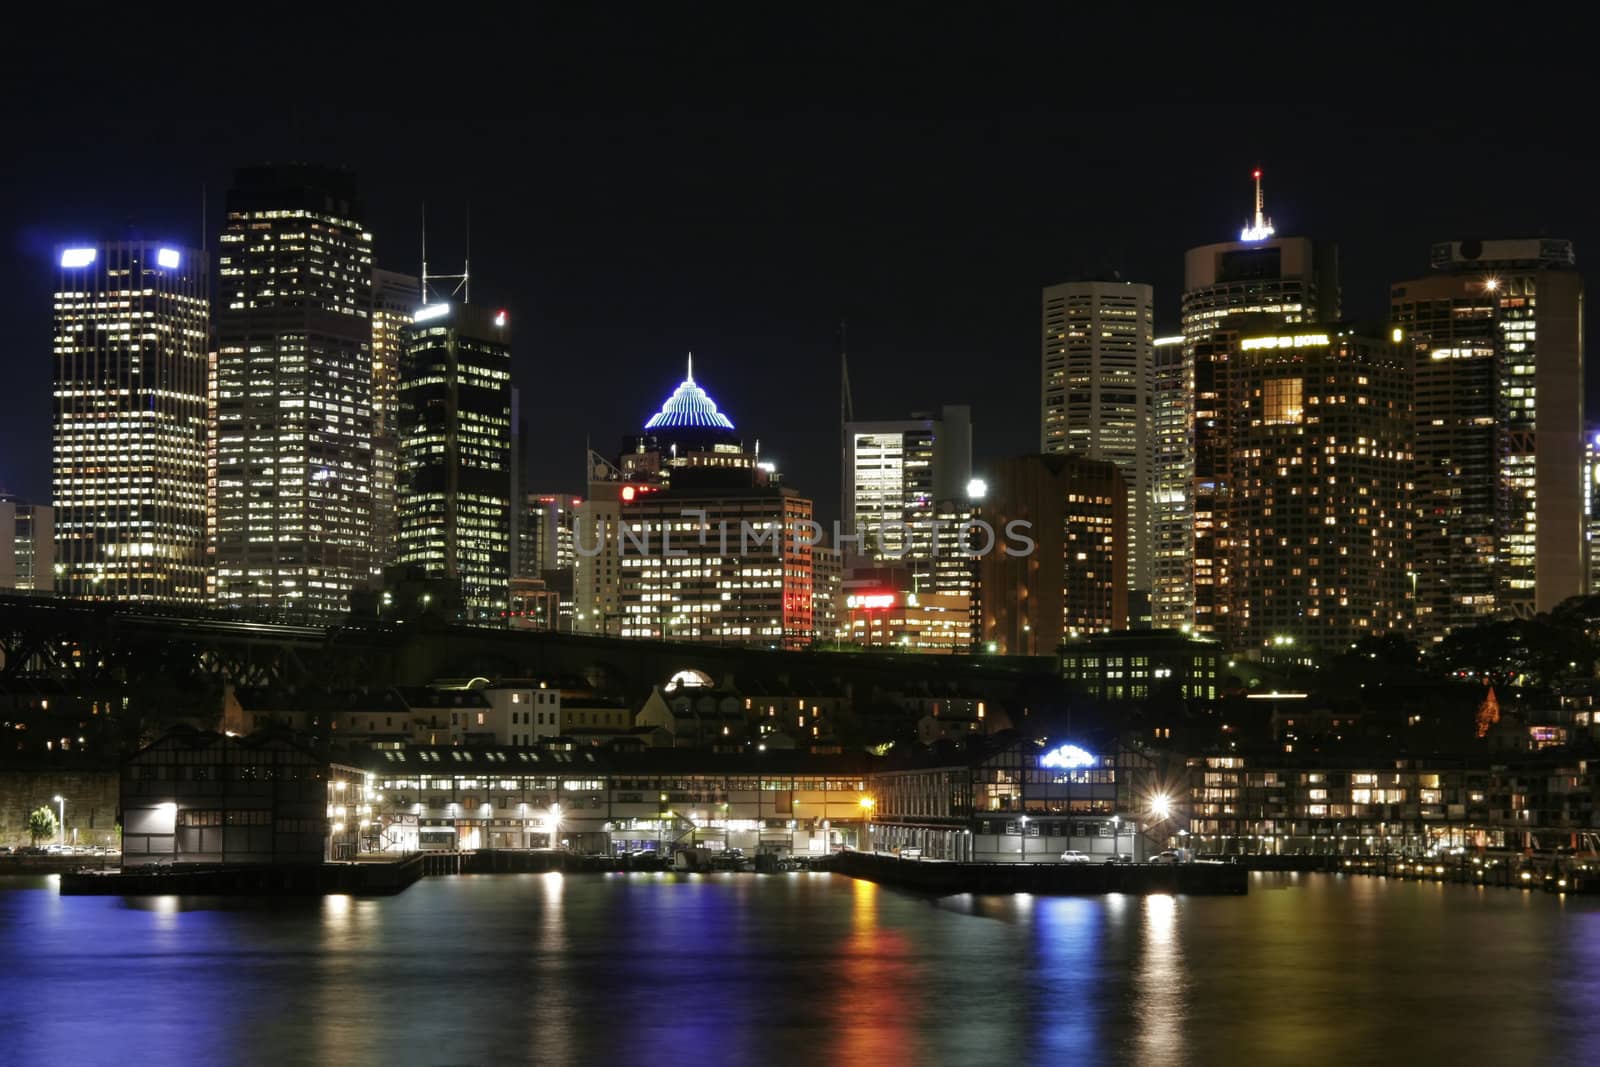 Sydney At Night by thorsten